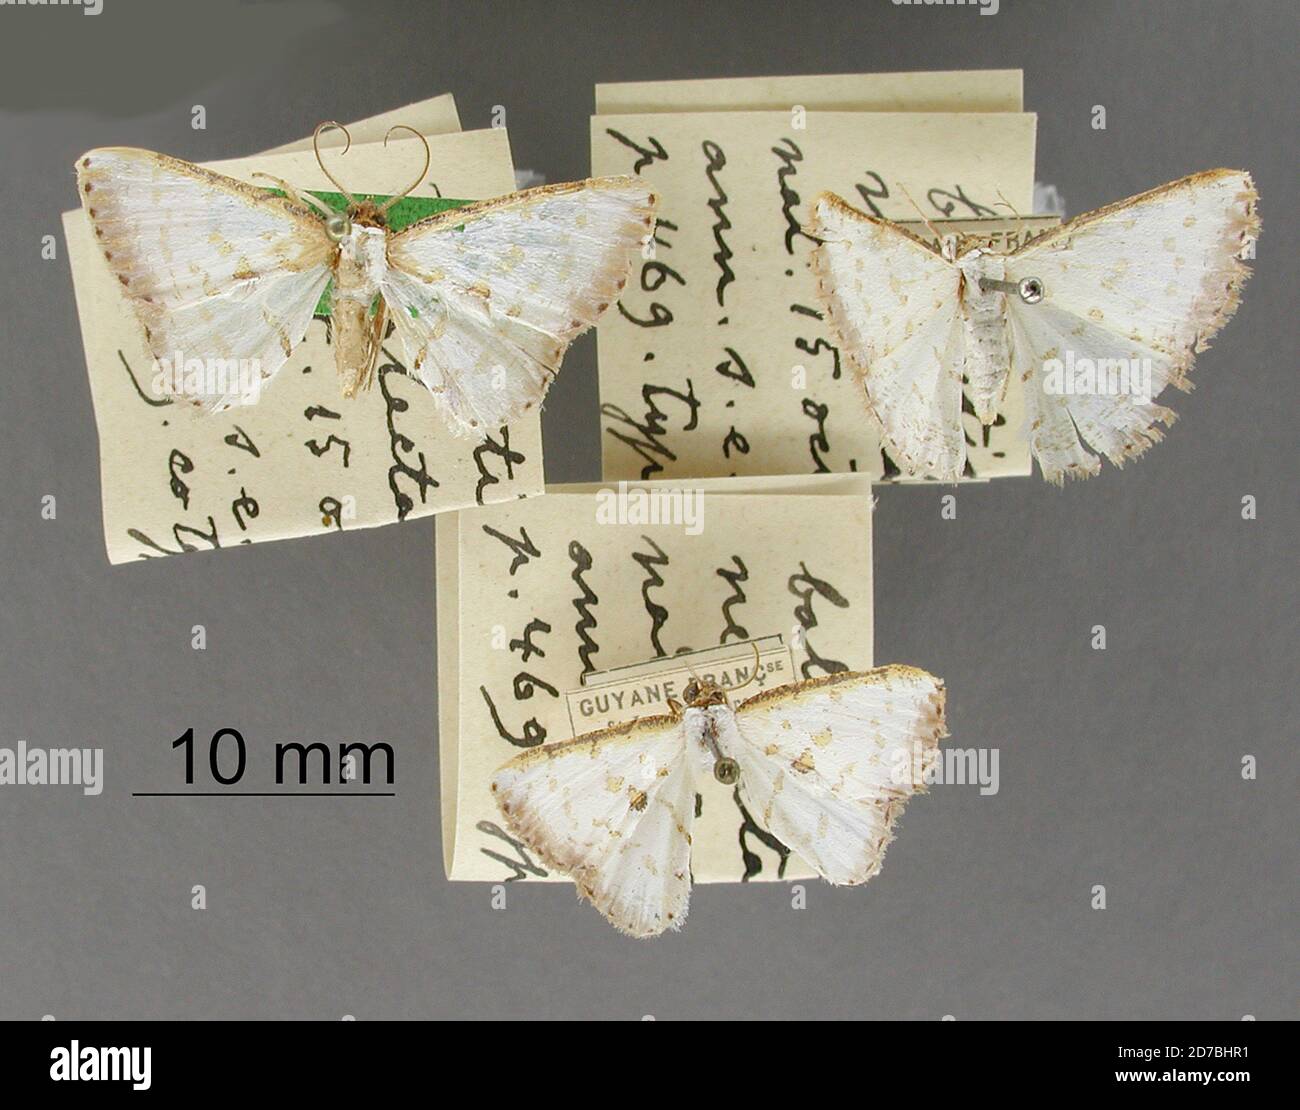 Pinned, Ballantiophora neglecta Thierry-Mieg, 1910, Animalia, Arthropoda, Insecta, Lepidoptera, Geometridae, Ennominae Stock Photo